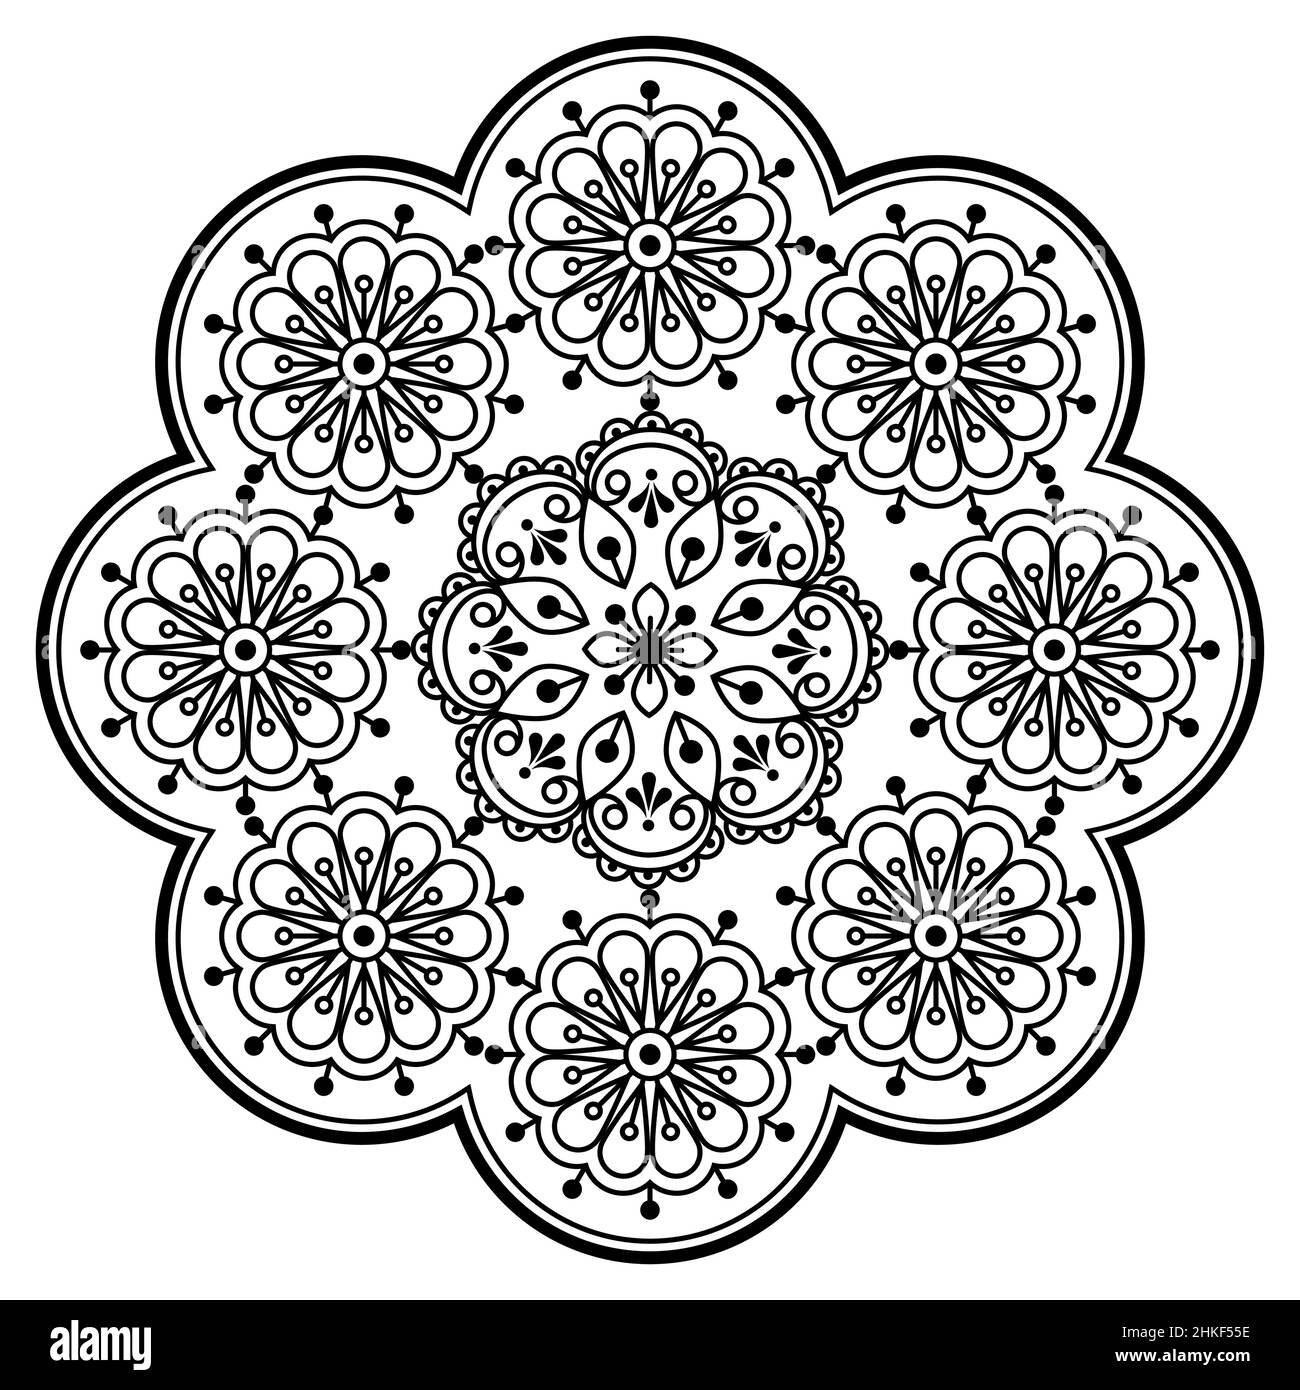 Rétro scandinave vector broderie folk art style mandala design avec des fleurs parfait pour une carte de vœux ou une invitation de mariage en noir et blanc Illustration de Vecteur